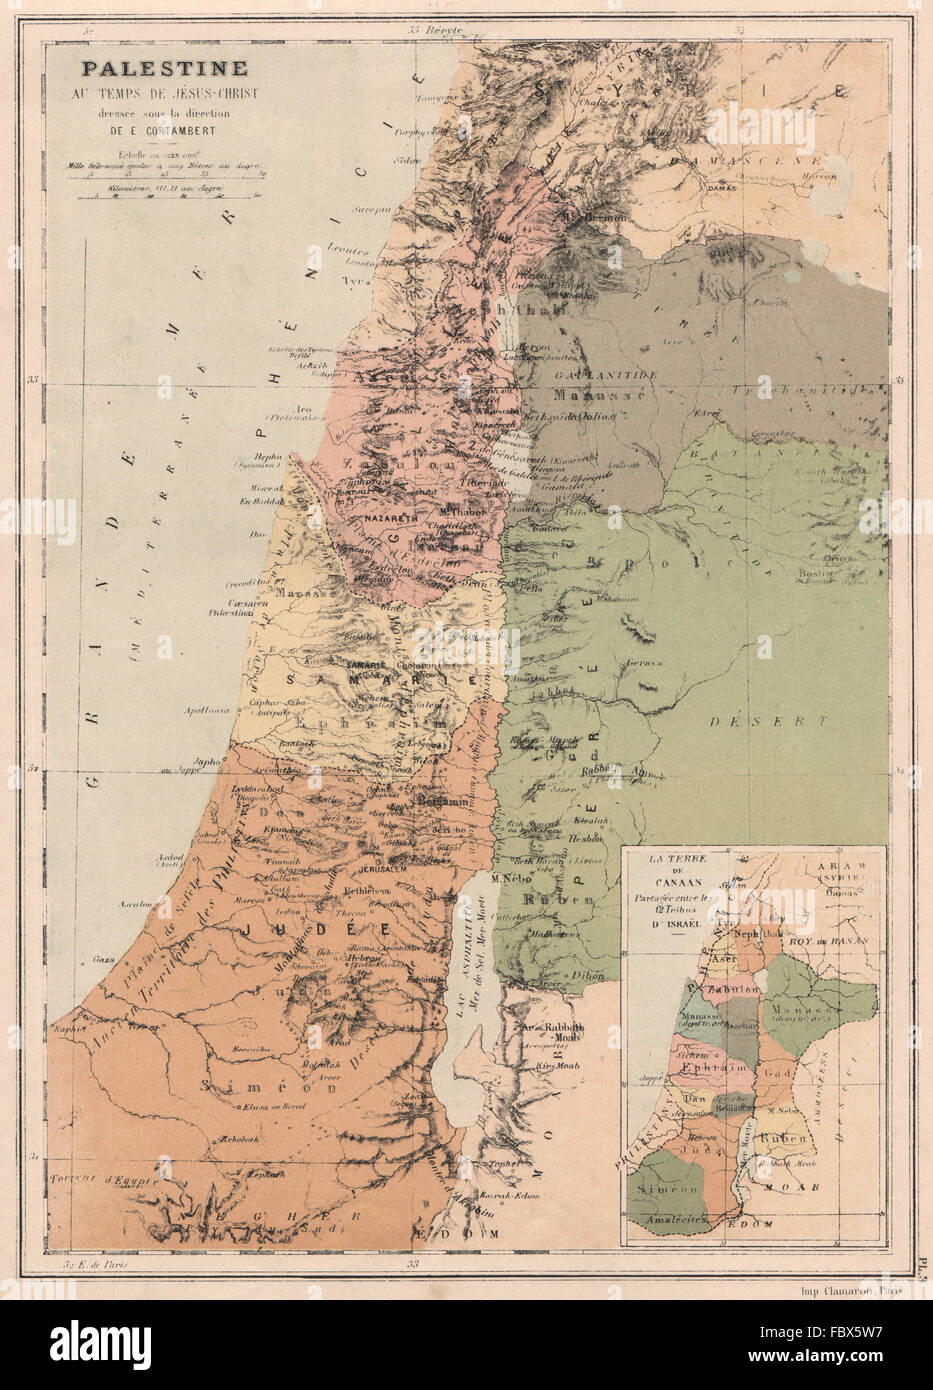 Palästina in der Zeit des Christ.Canaan unterteilt in 12 Stämme von Israel 1880 Karte Stockfoto